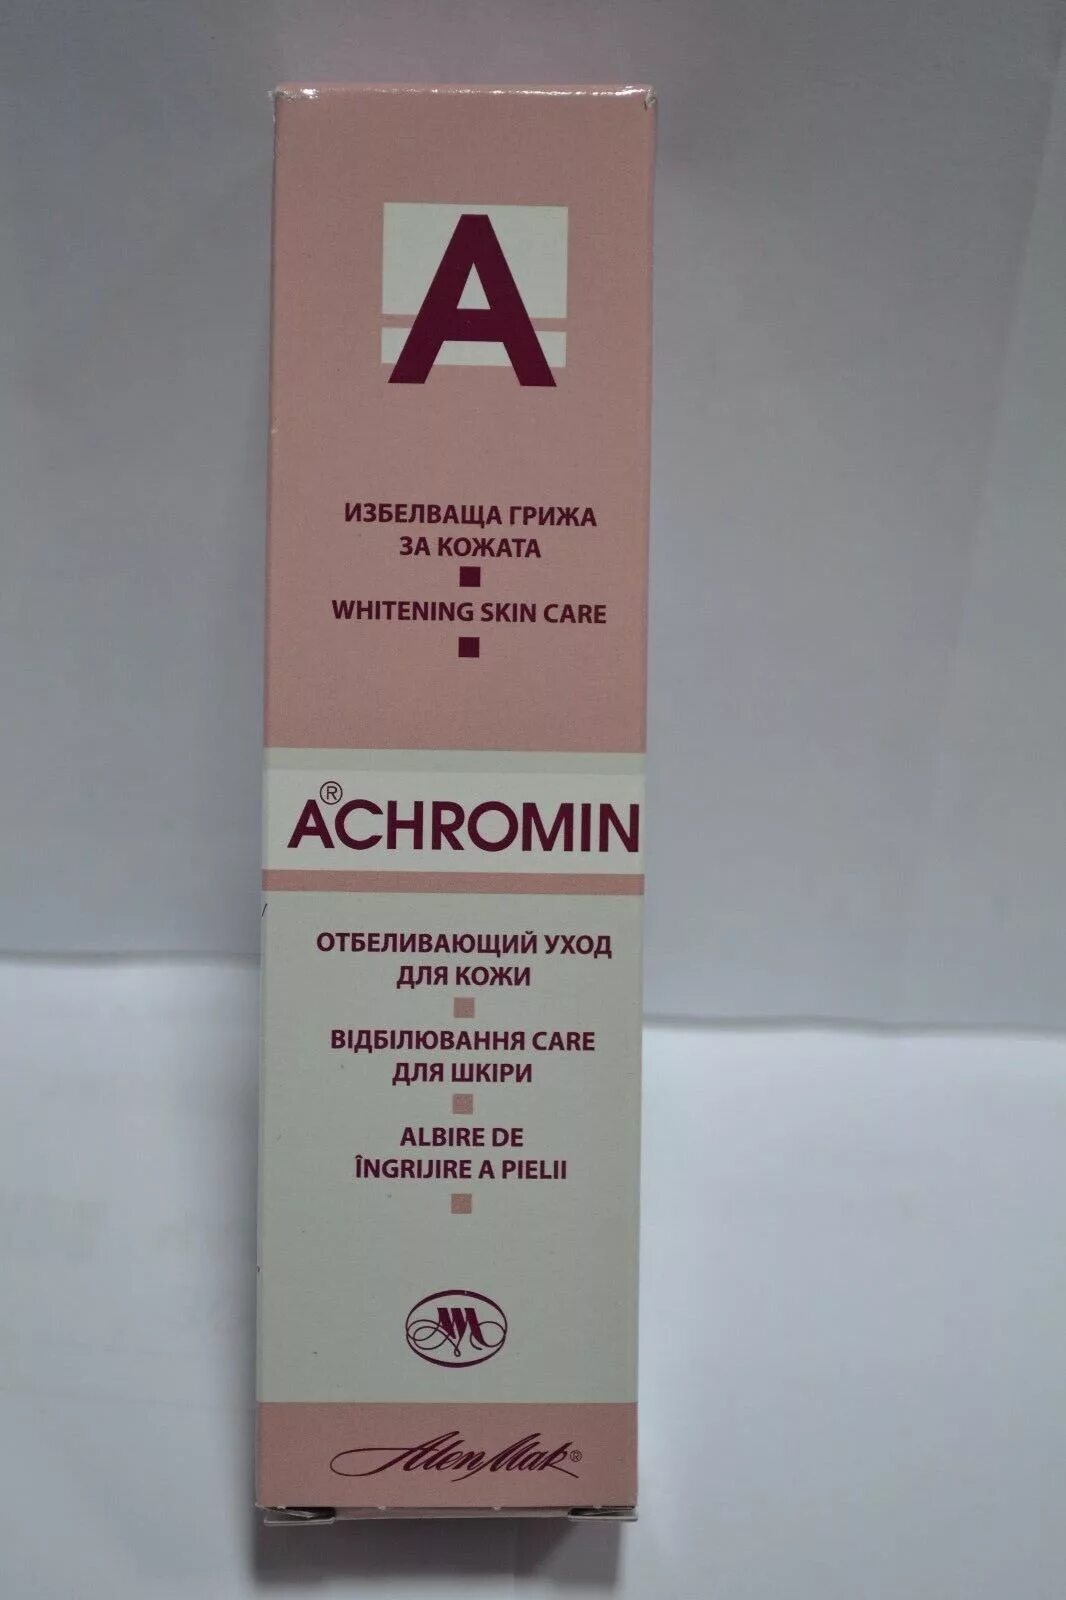 Ахромин крем отбеливающий купить. Achromin отбеливающий крем. Крем ахромин от пигментных пятен. Отбеливающий крем для лица от пигментных пятен ахромин. Achromin крем отбеливающий классический 45ml Болгария.